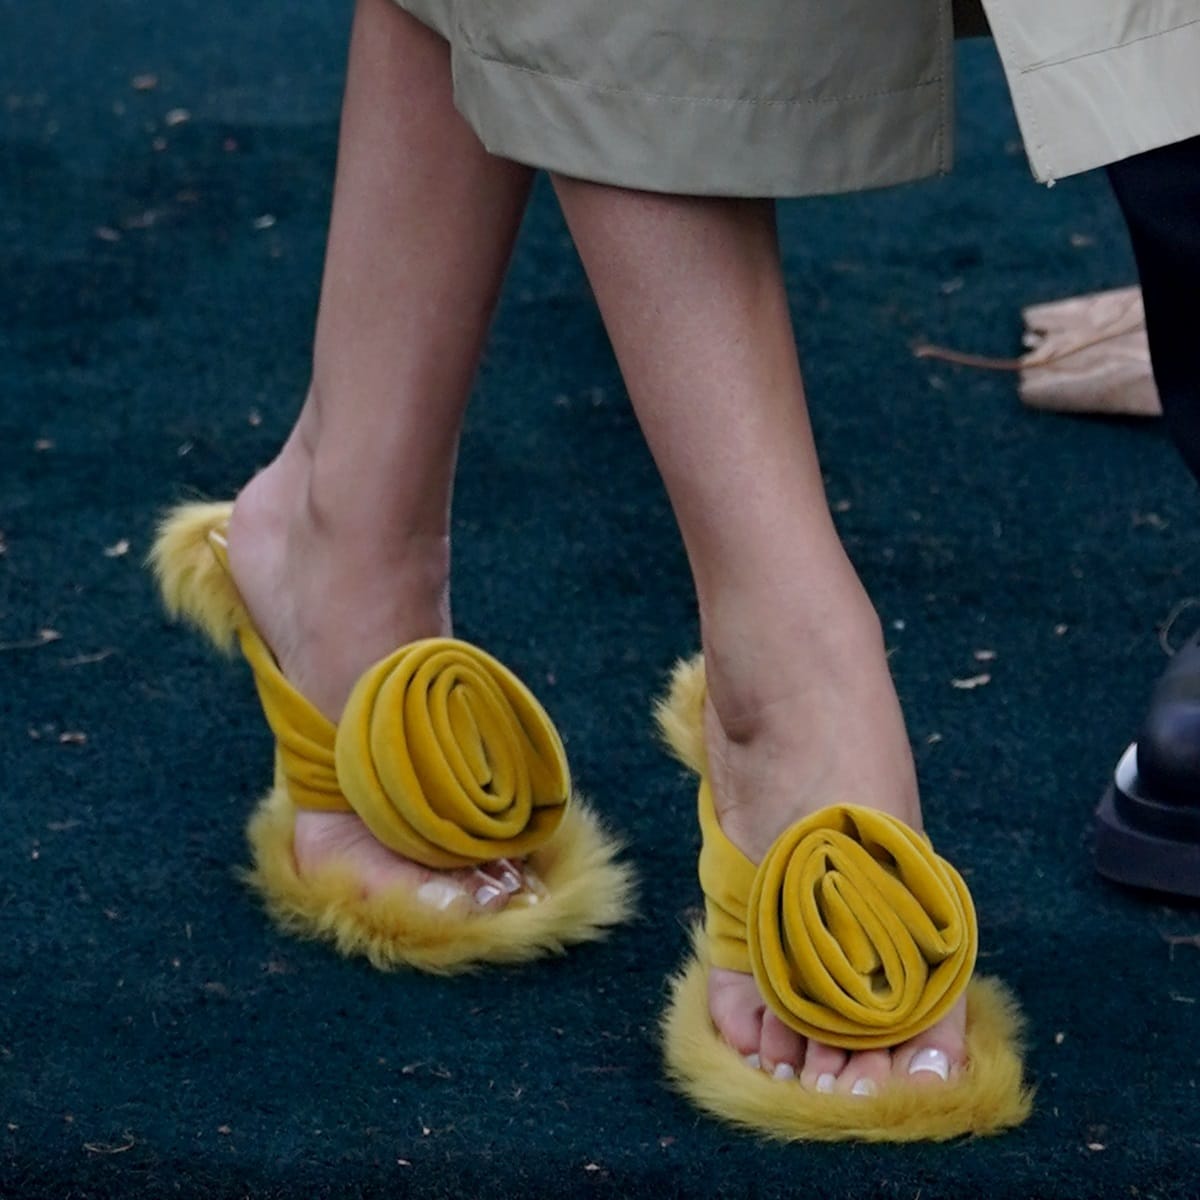 Rosie Huntington-Whiteley shows off her feet in lemon yellow Burberry Rose 100mm shearling velvet sandals